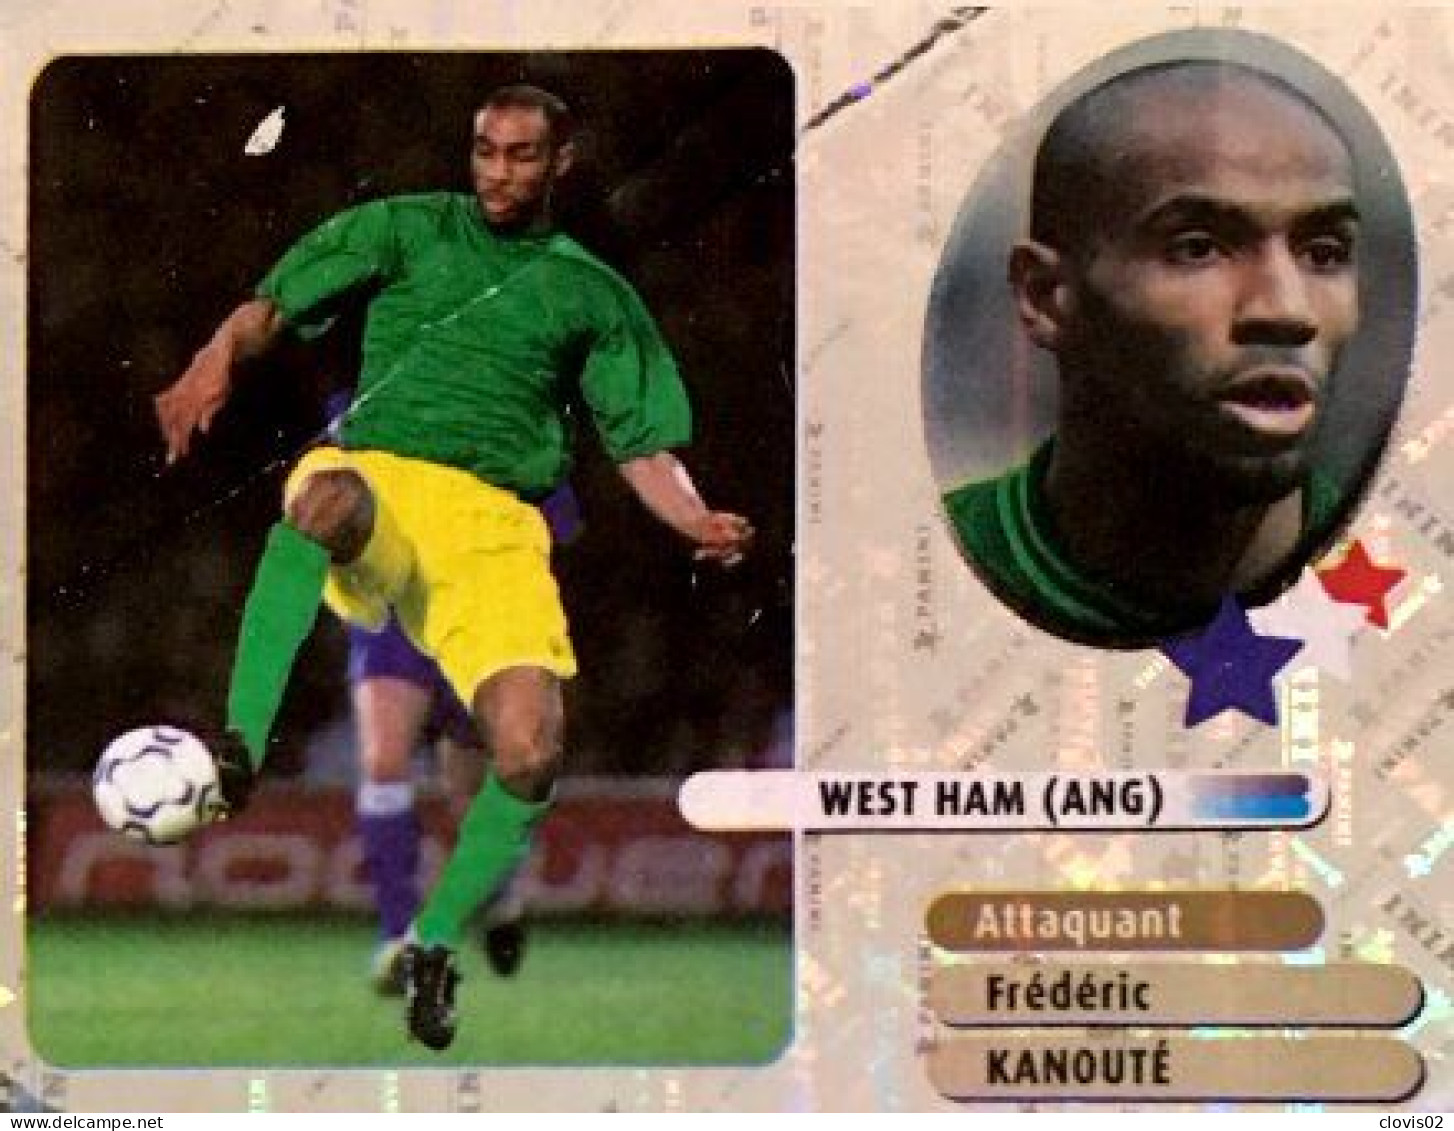 352 Frédéric Kanouté - West Ham - Stars Du Foot - Panini France Foot 2003 Sticker Vignette - Franse Uitgave